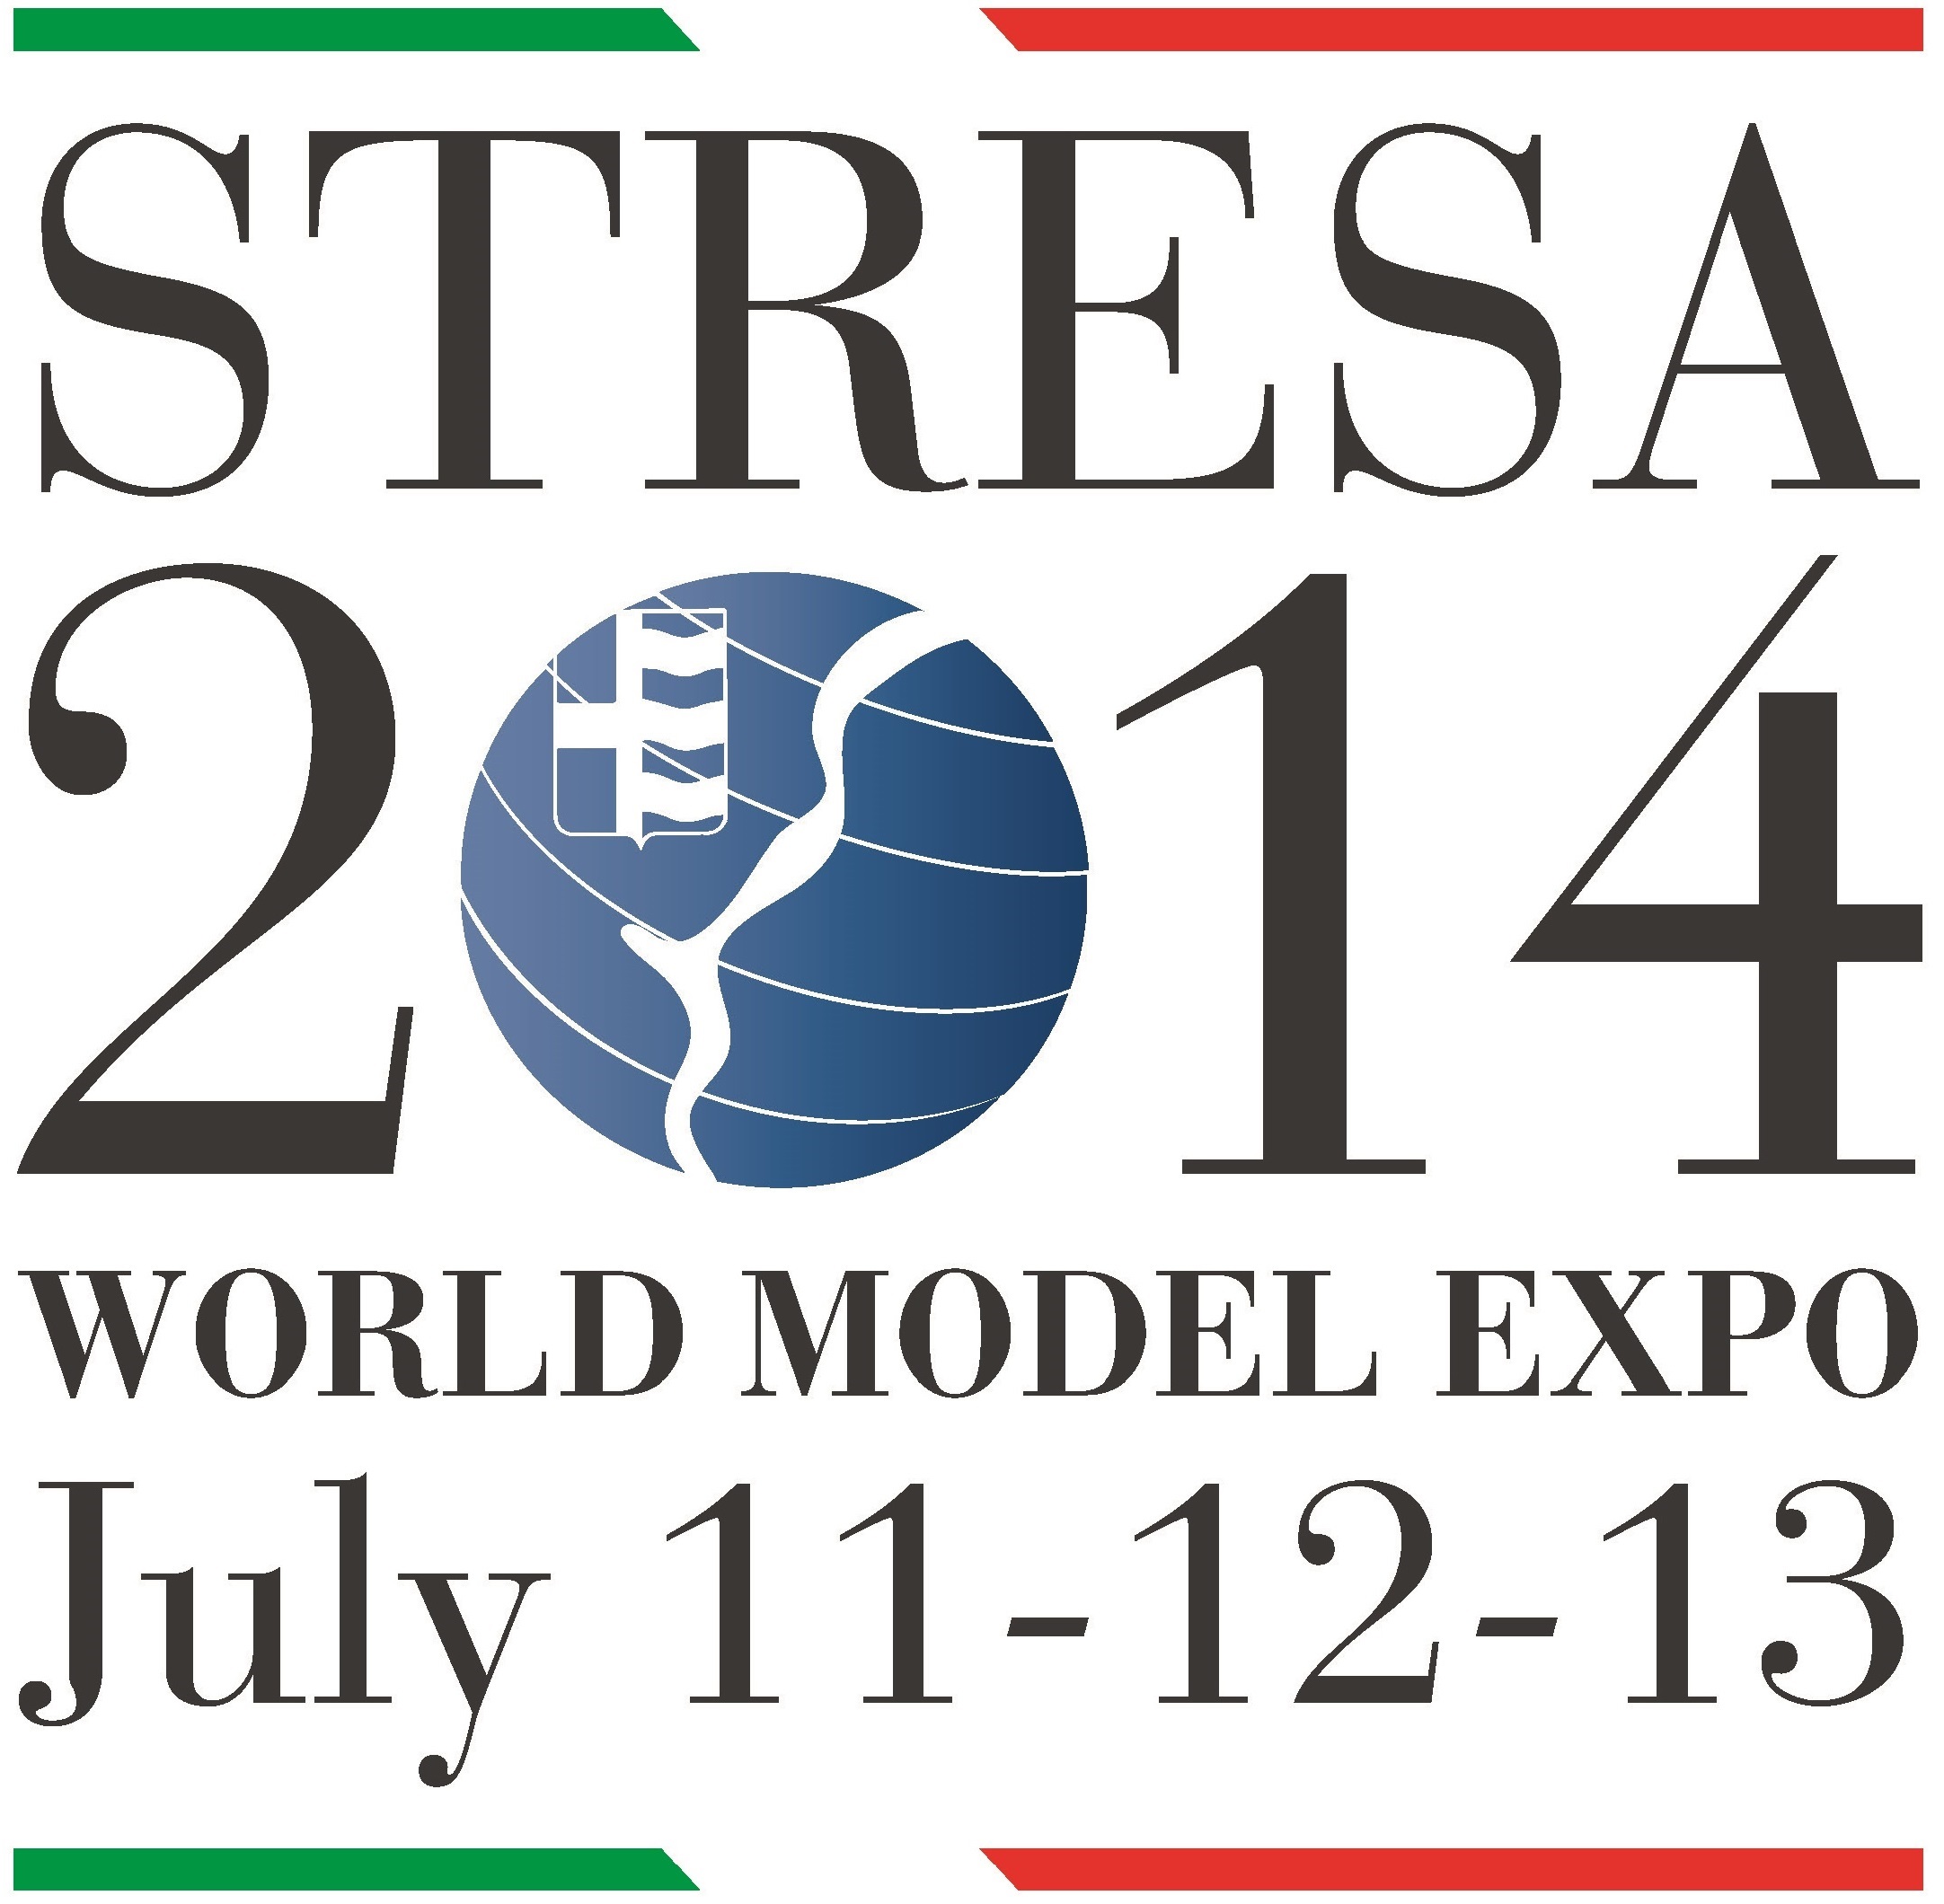 Stresa 2014 World Model Expo - La festa internazionale del modellismo